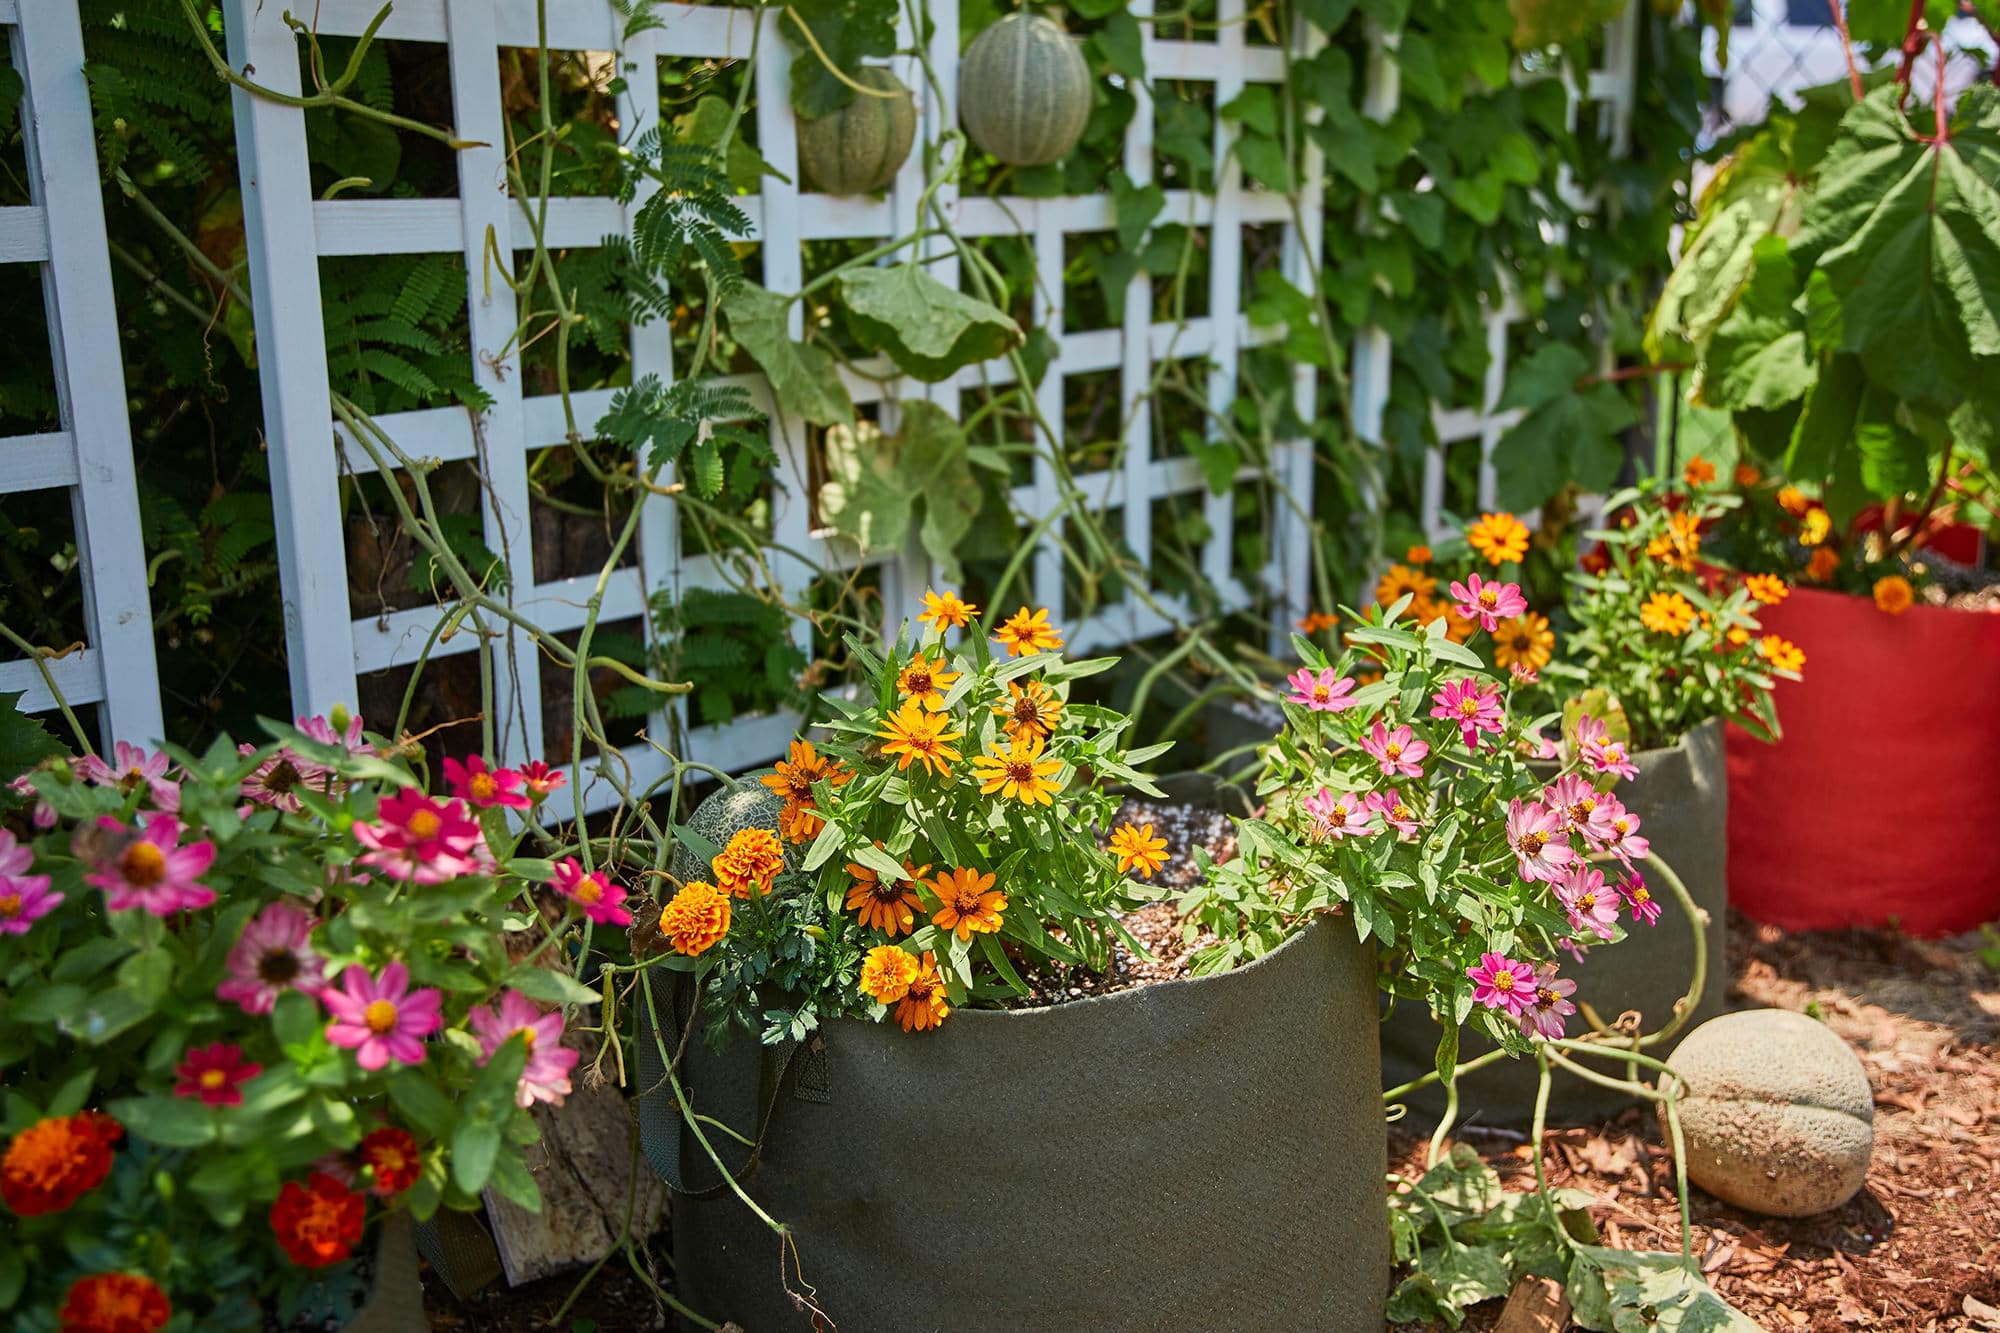 https://smartpots.com/wp-content/uploads/2021/05/Smart-Pot_Fabric-Planters_flowers.jpg